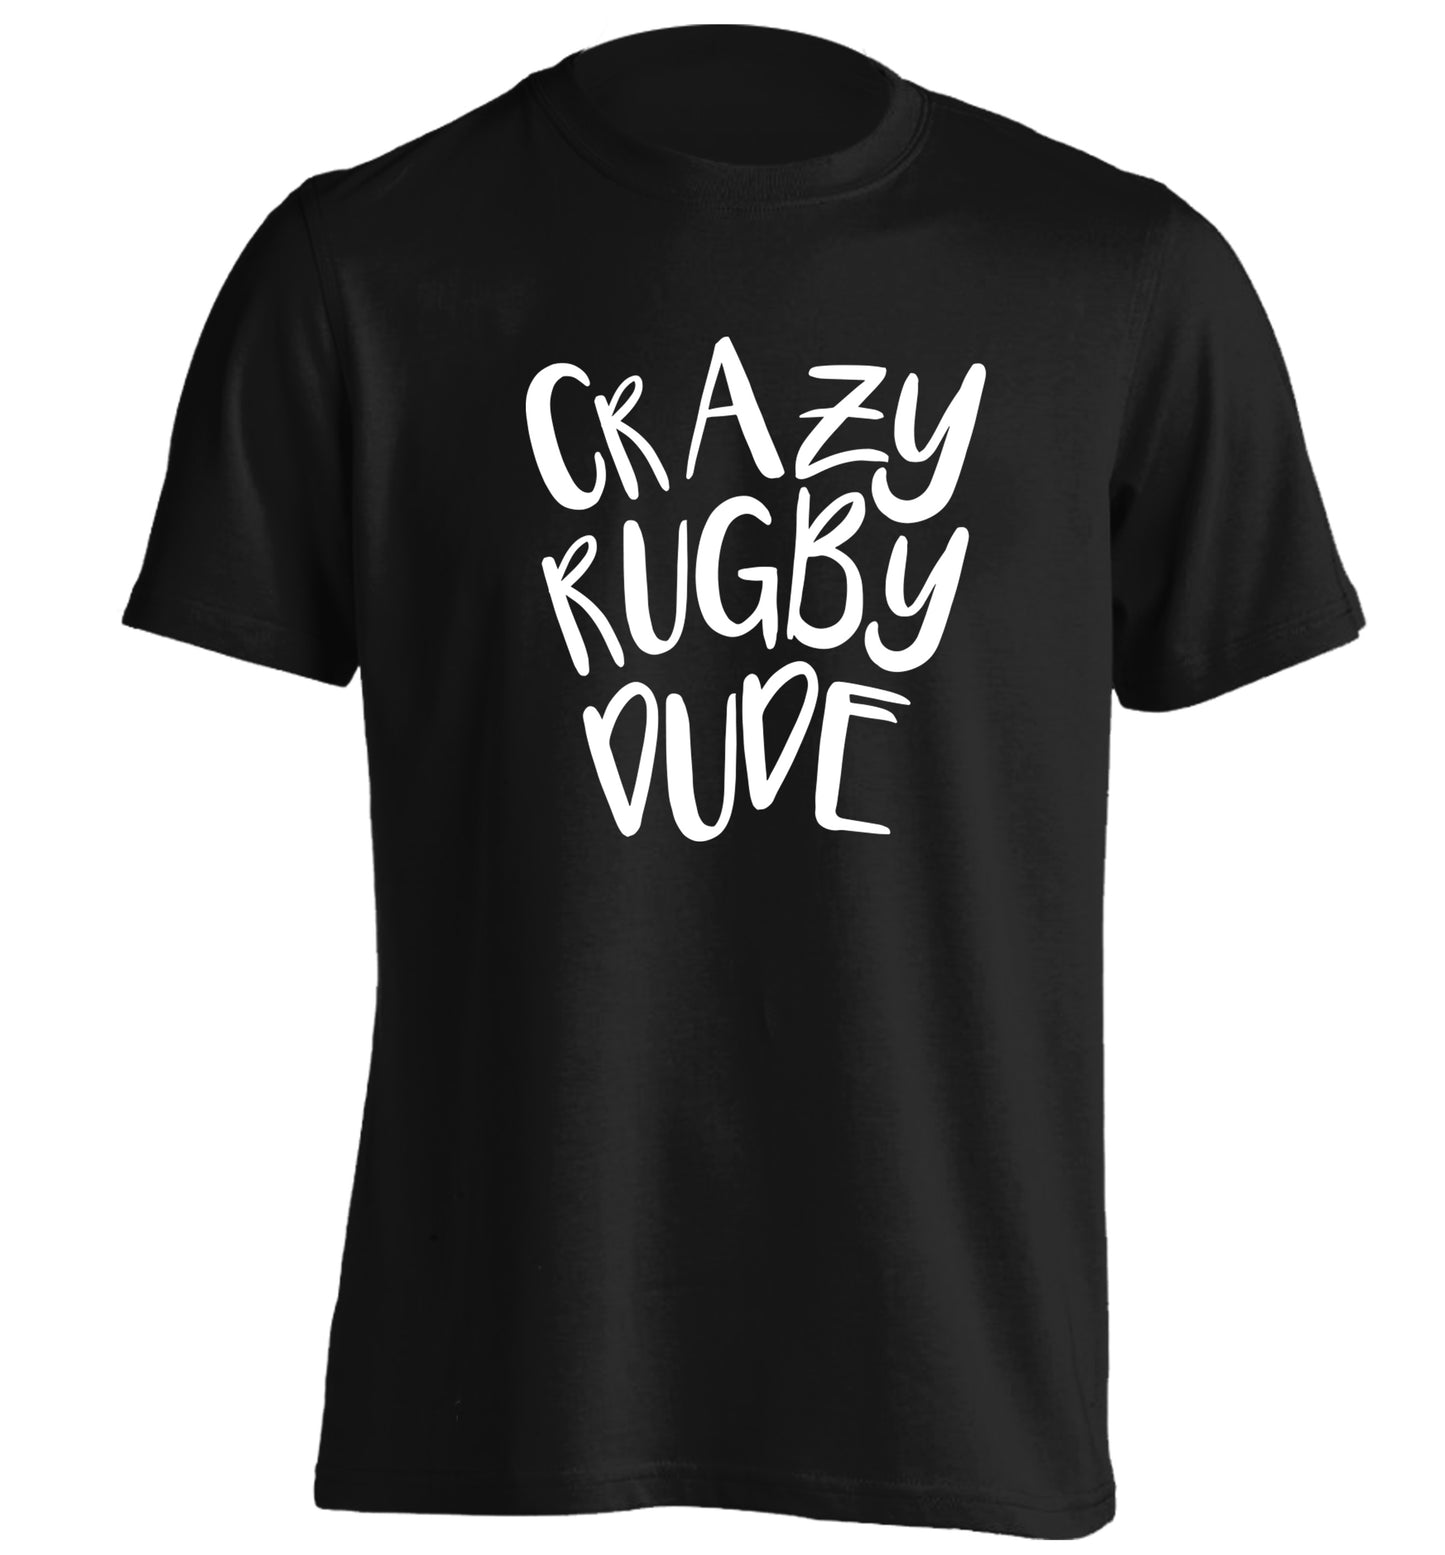 Crazy rugby dude adults unisex black Tshirt 2XL